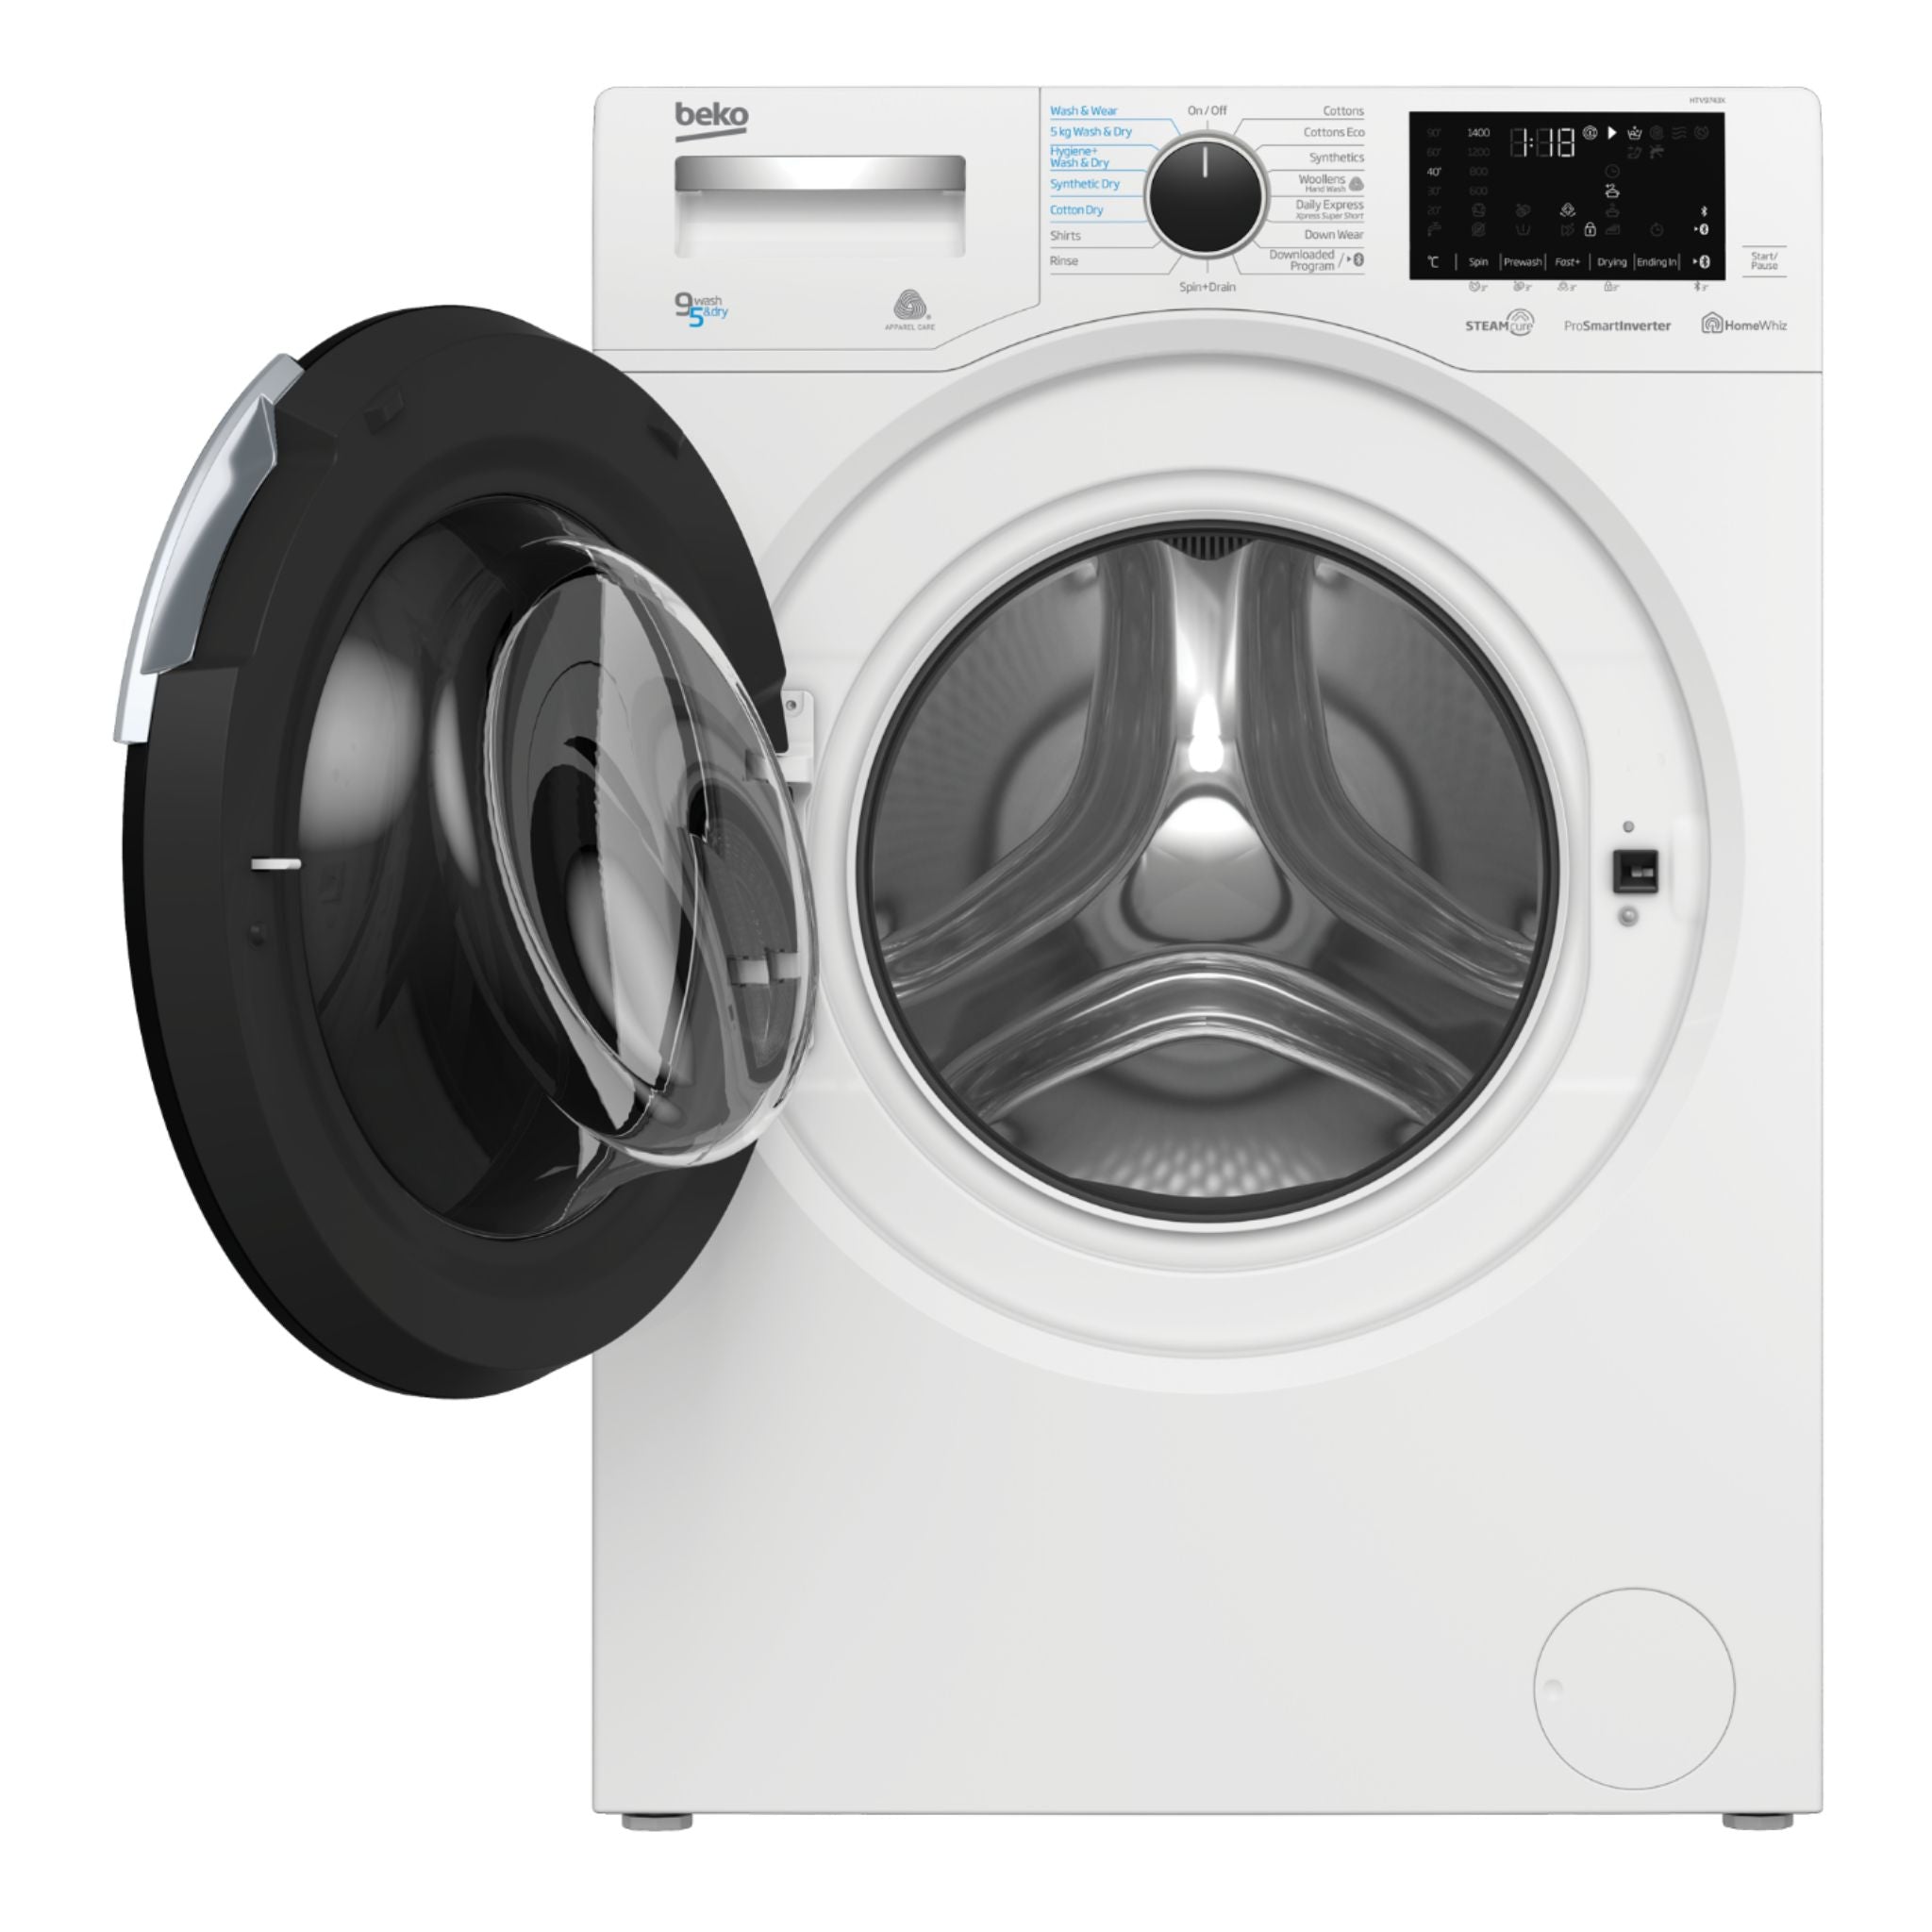 BEKO HTV9743X 9.0 kg. Washer/5.0 kg. Dryer Front Load Washing Machine Beko